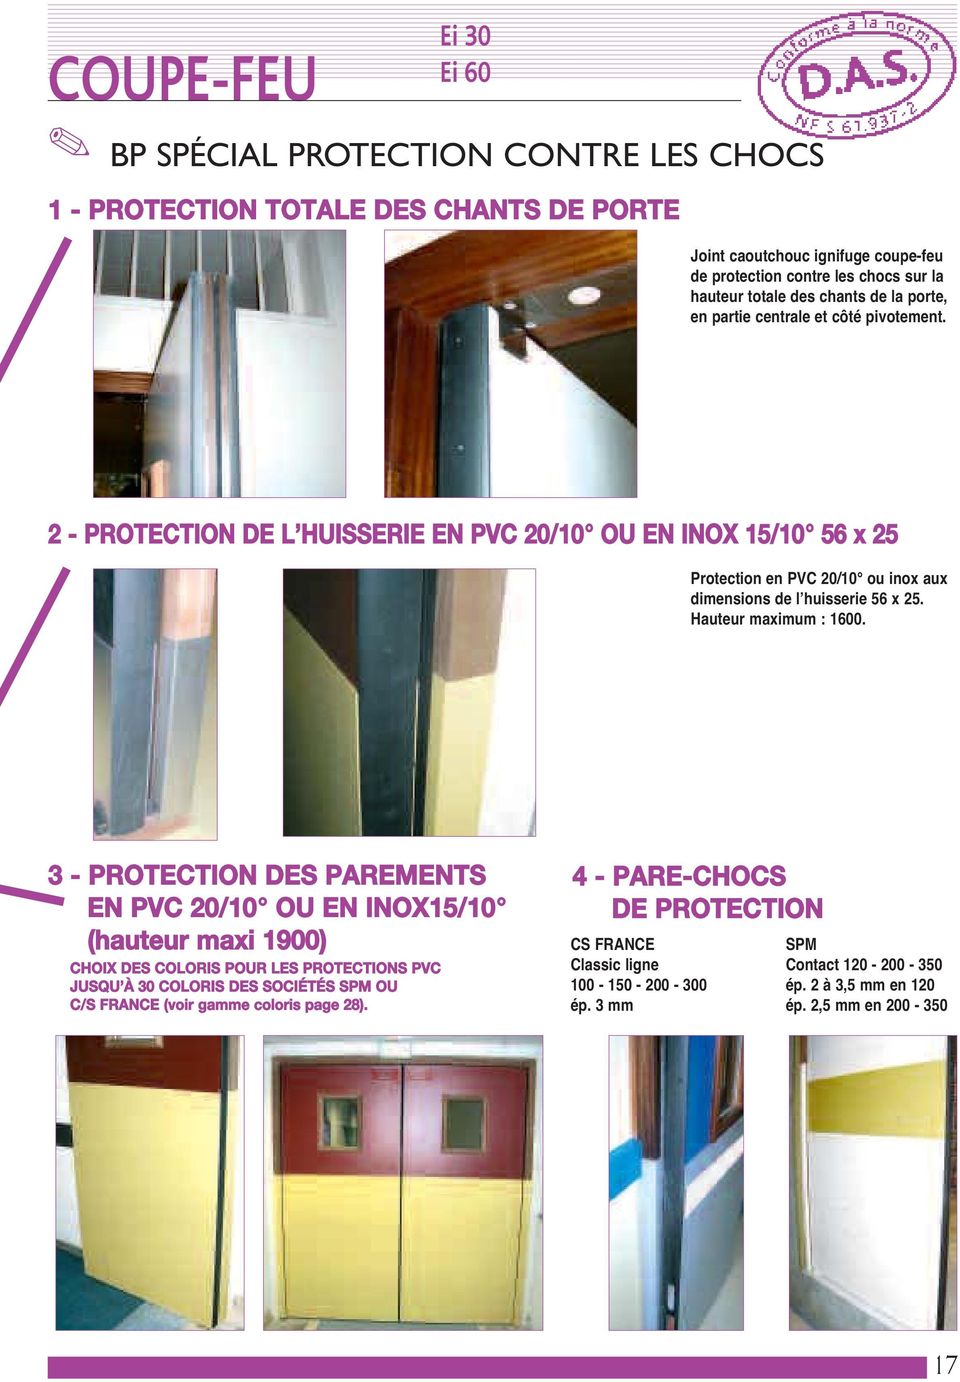 2 - PROTECTION DE L HUISSERIE EN PVC 20/10 OU EN INOX 15/10 56 x 25 Protection en PVC 20/10 ou inox aux dimensions de l huisserie 56 x 25. Hauteur maximum : 1600.